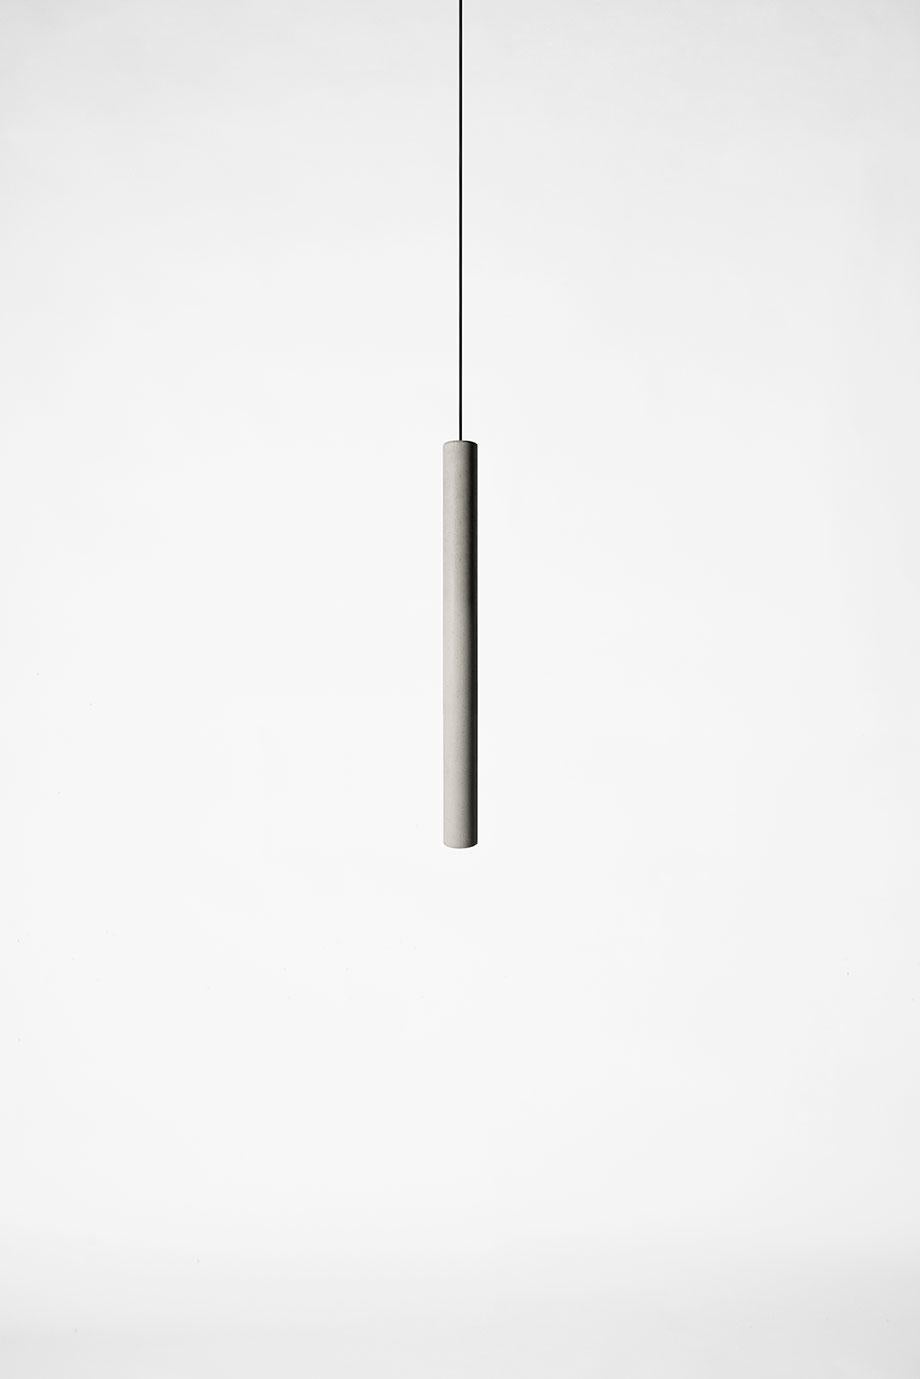 concrete pendant lights